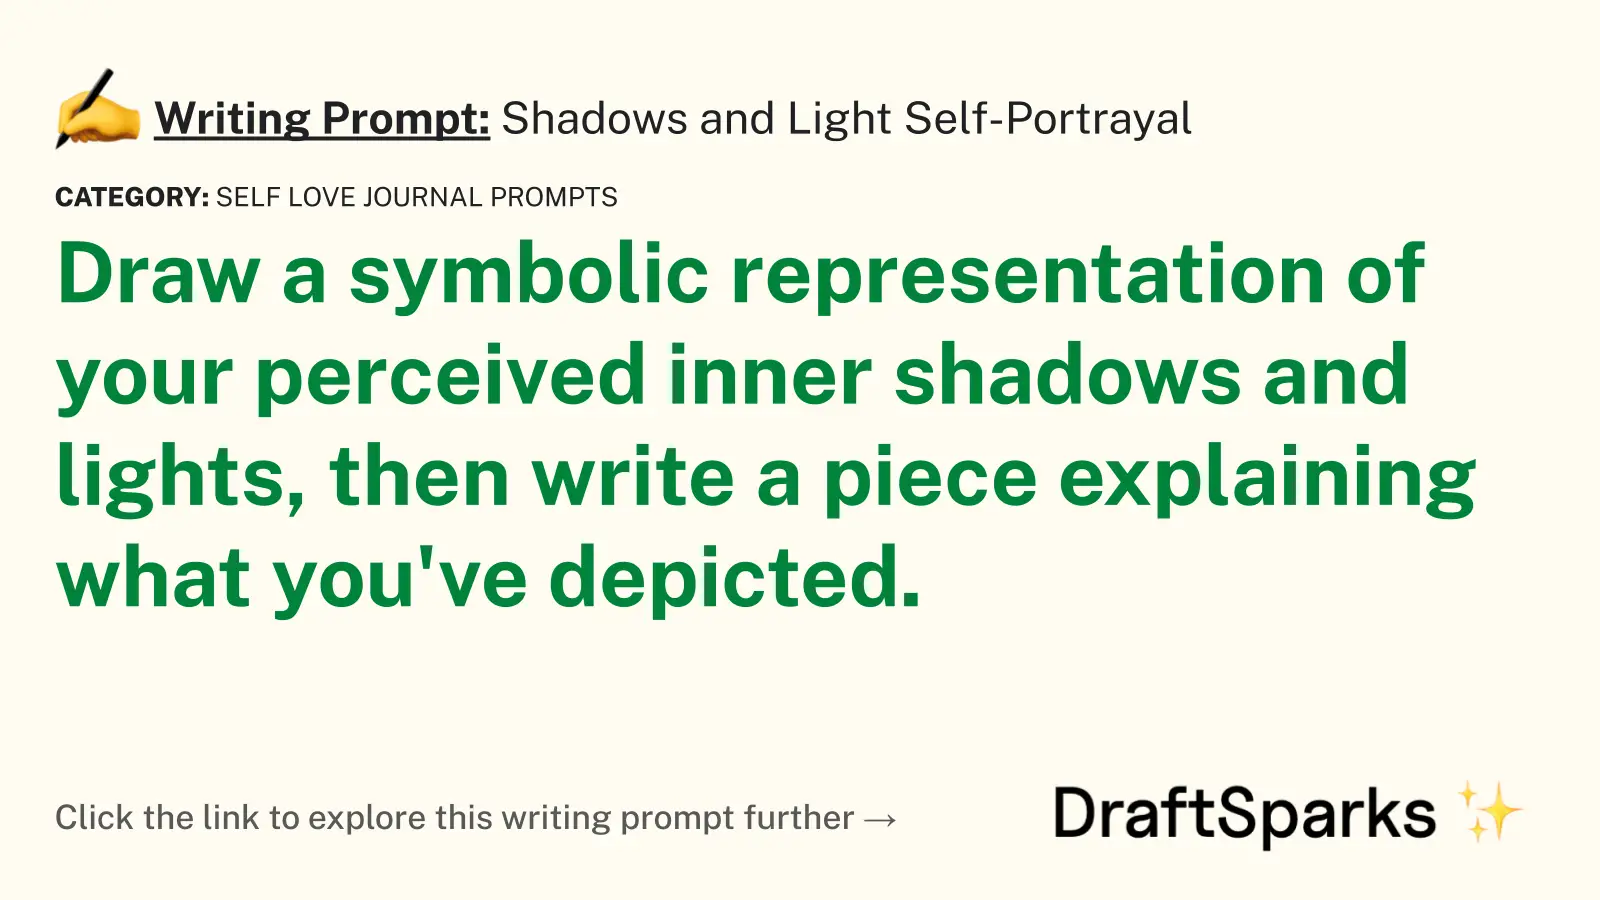 Shadows and Light Self-Portrayal